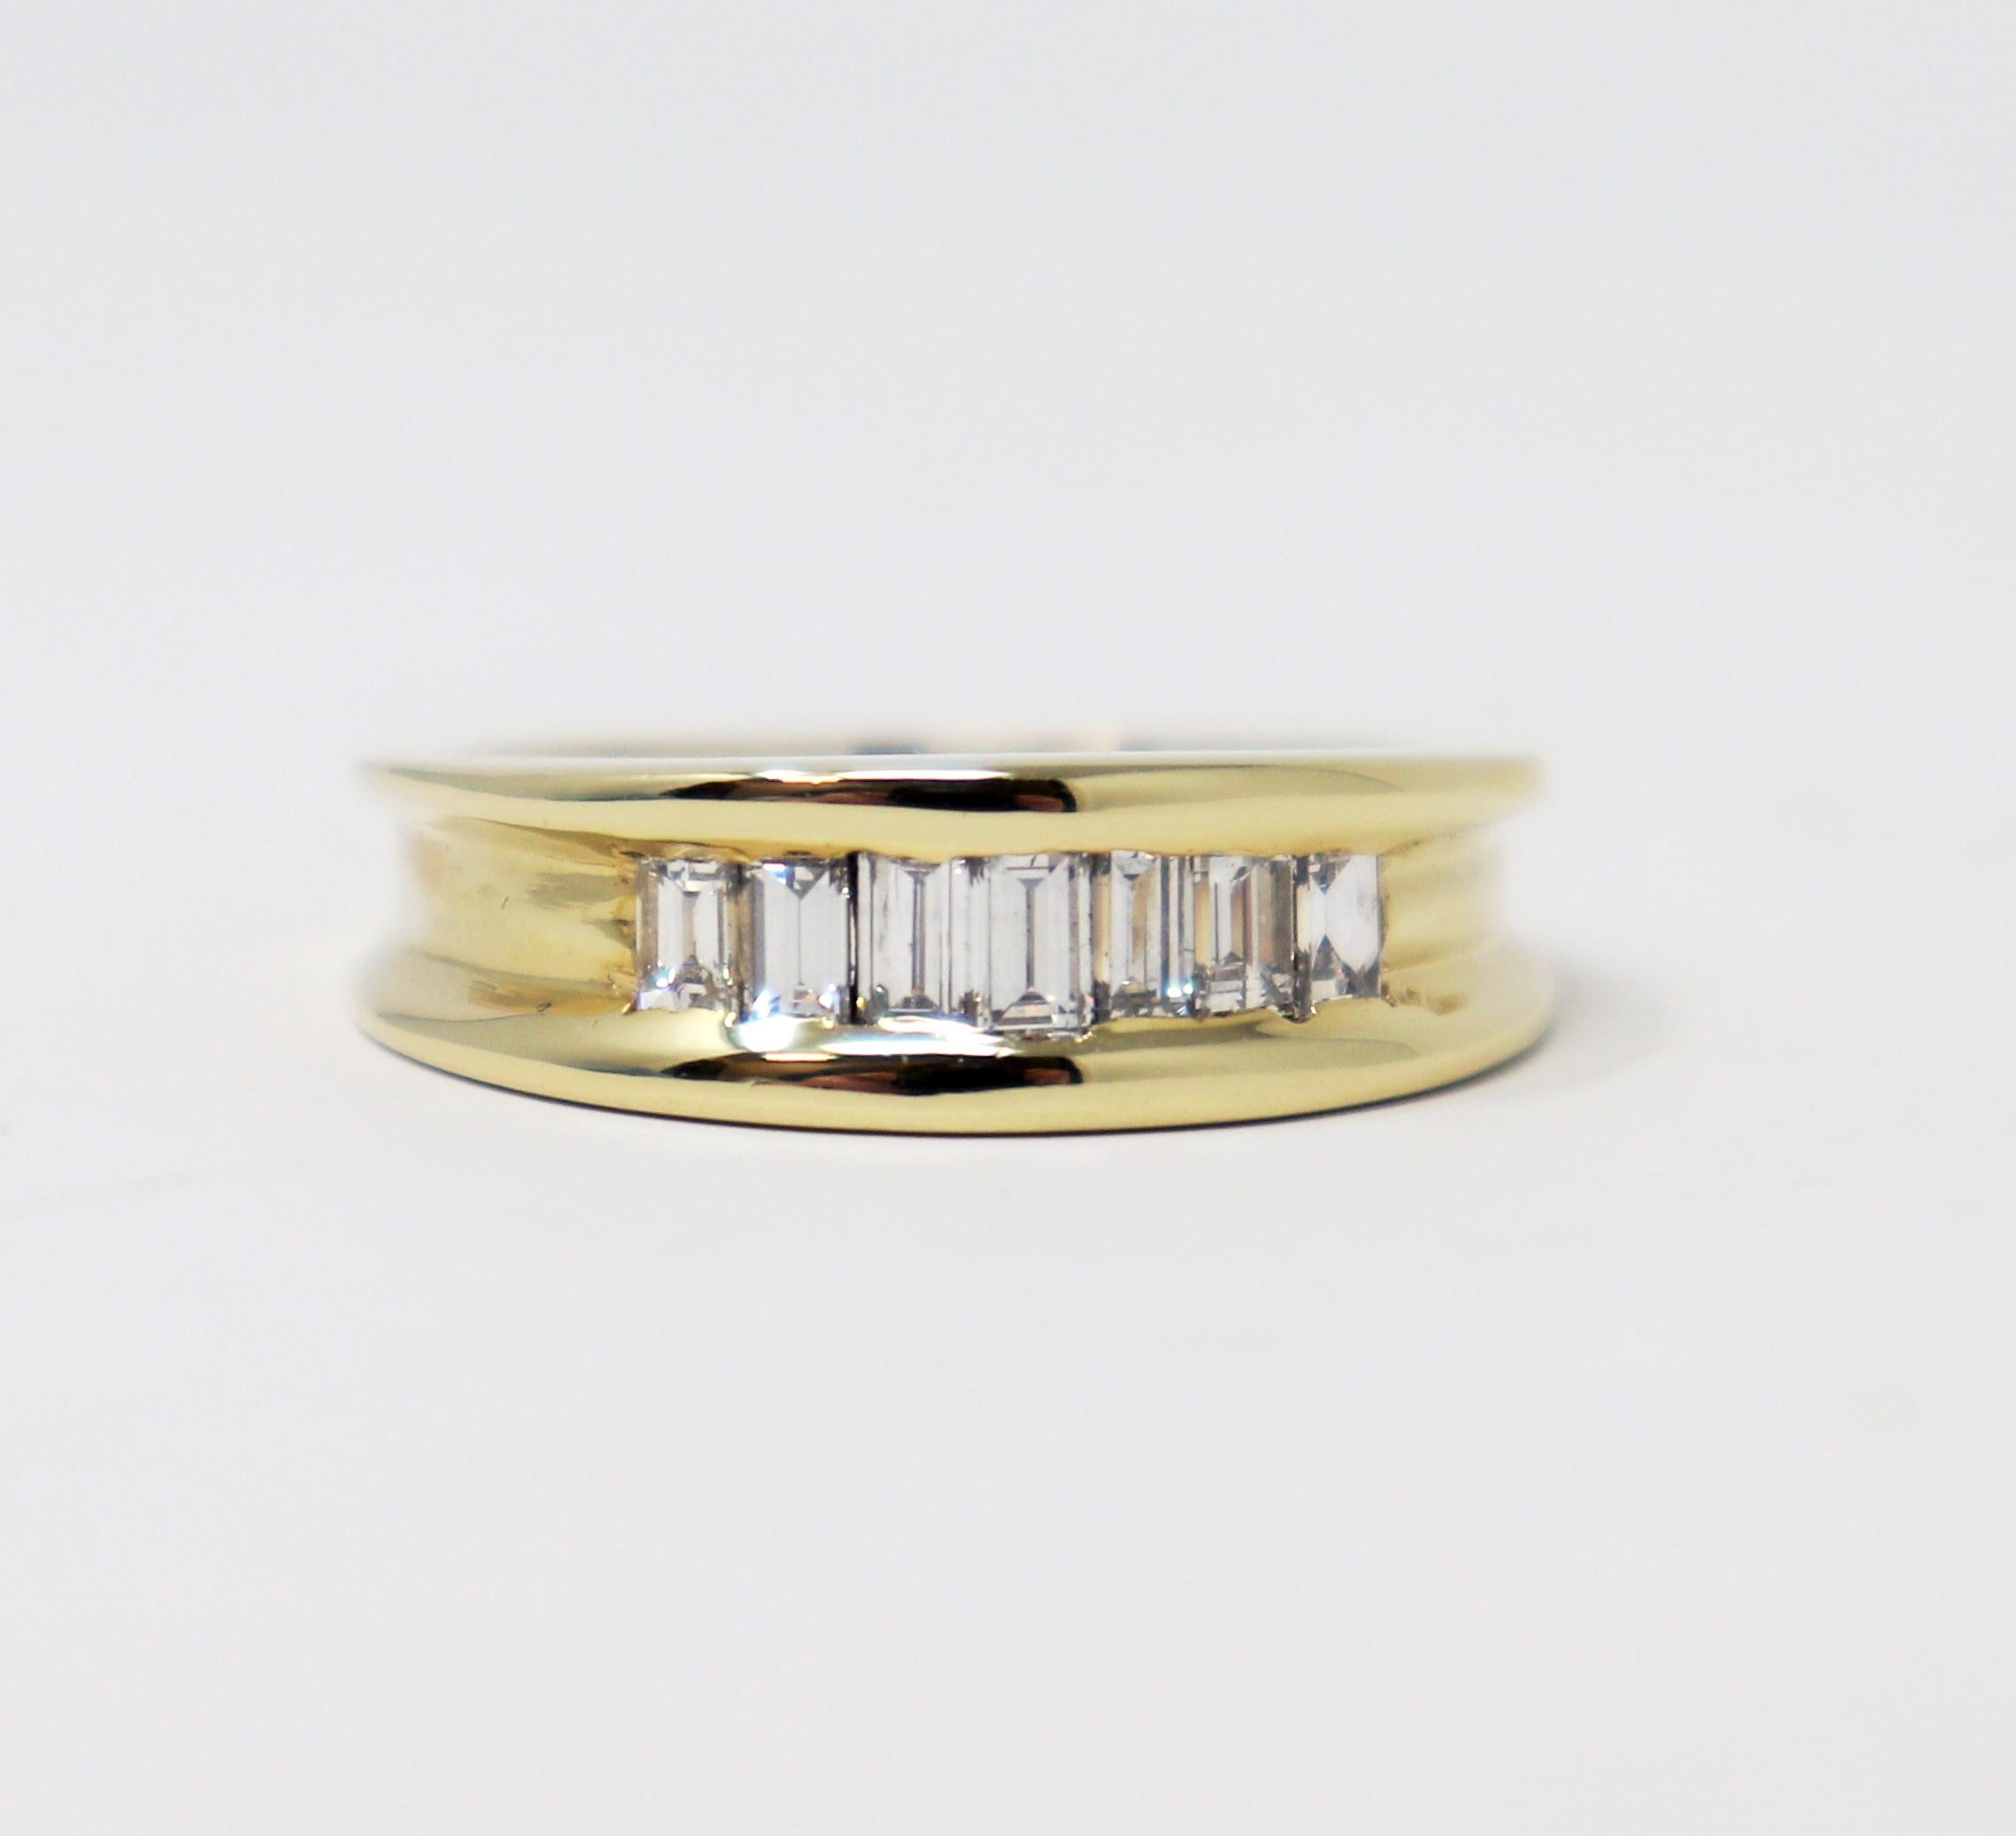 Ringgröße: 9.75

Schlichter, eleganter Bandring mit funkelnden Diamanten besetzt. Dieses zeitlose Modell zeichnet sich durch eisweiße Baguettediamanten aus, die in einer einzigen eleganten Reihe gefasst sind. Das hochglanzpolierte Band hat ein